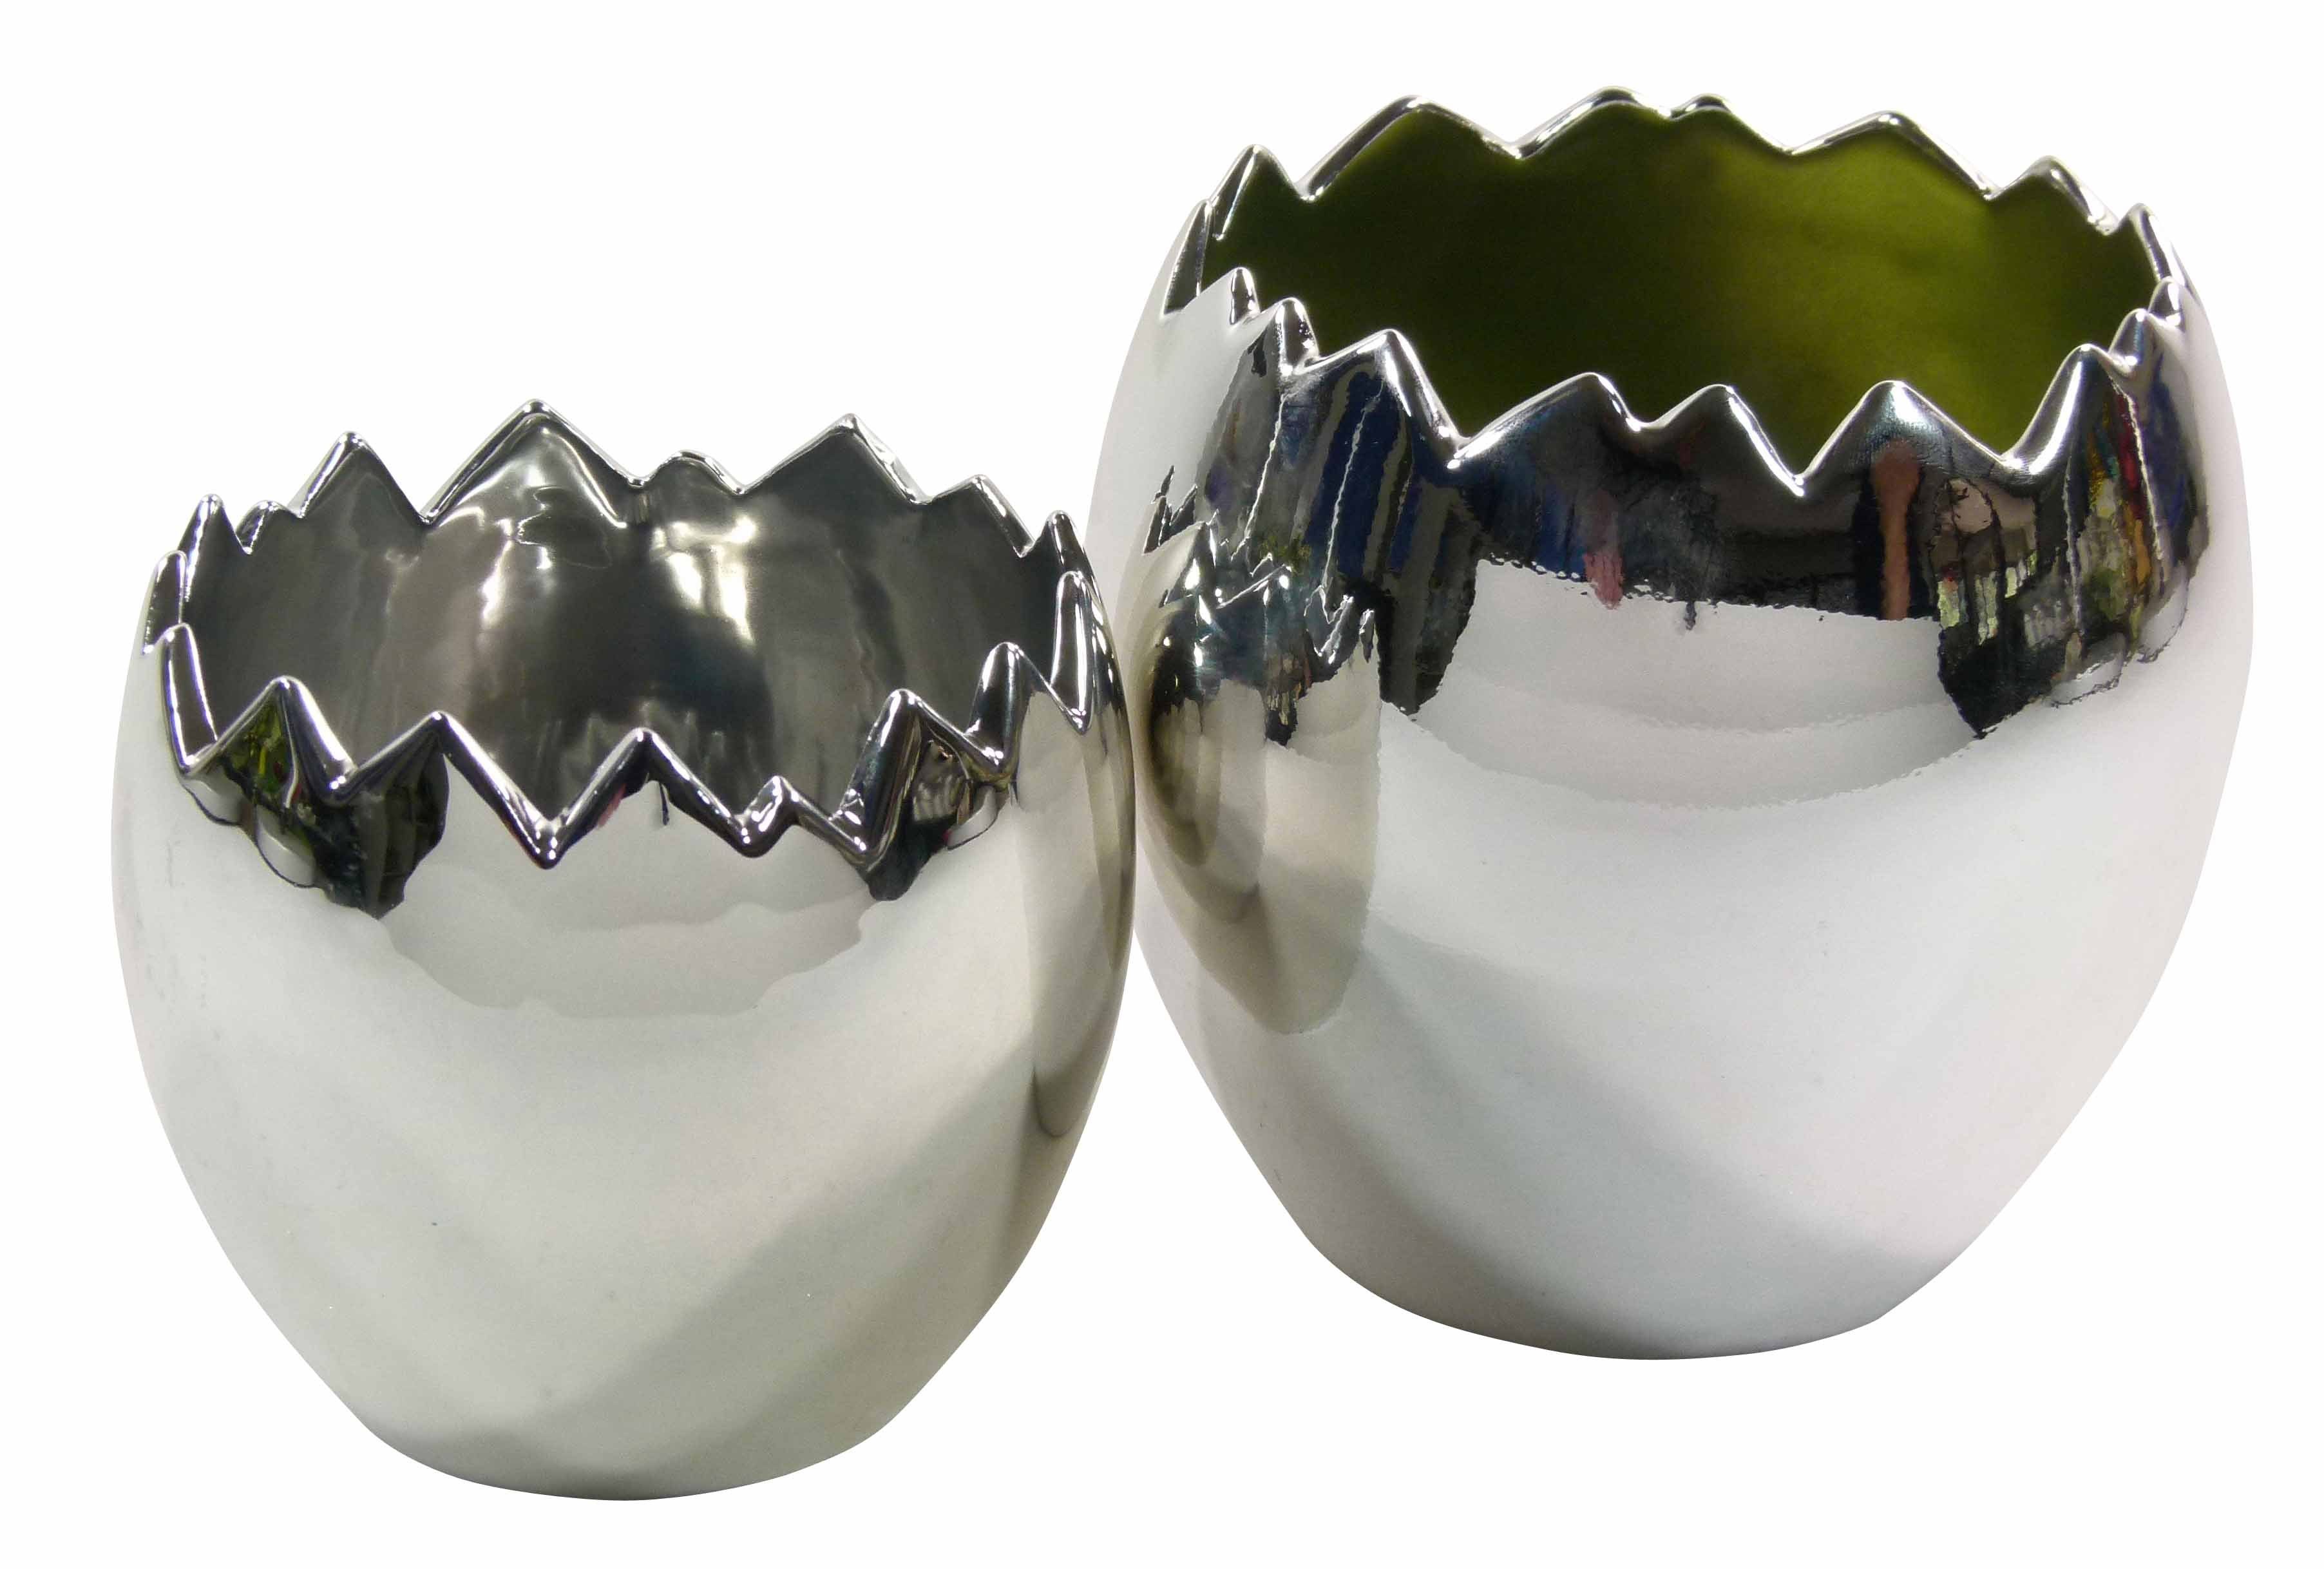 GlasArt Übertopf »Übertopf Ostern "Silver-Egg" Silber Ei Eiförmig Keramik  zwei Größen 11-14cm edel modern« (1 Stück) online kaufen | OTTO